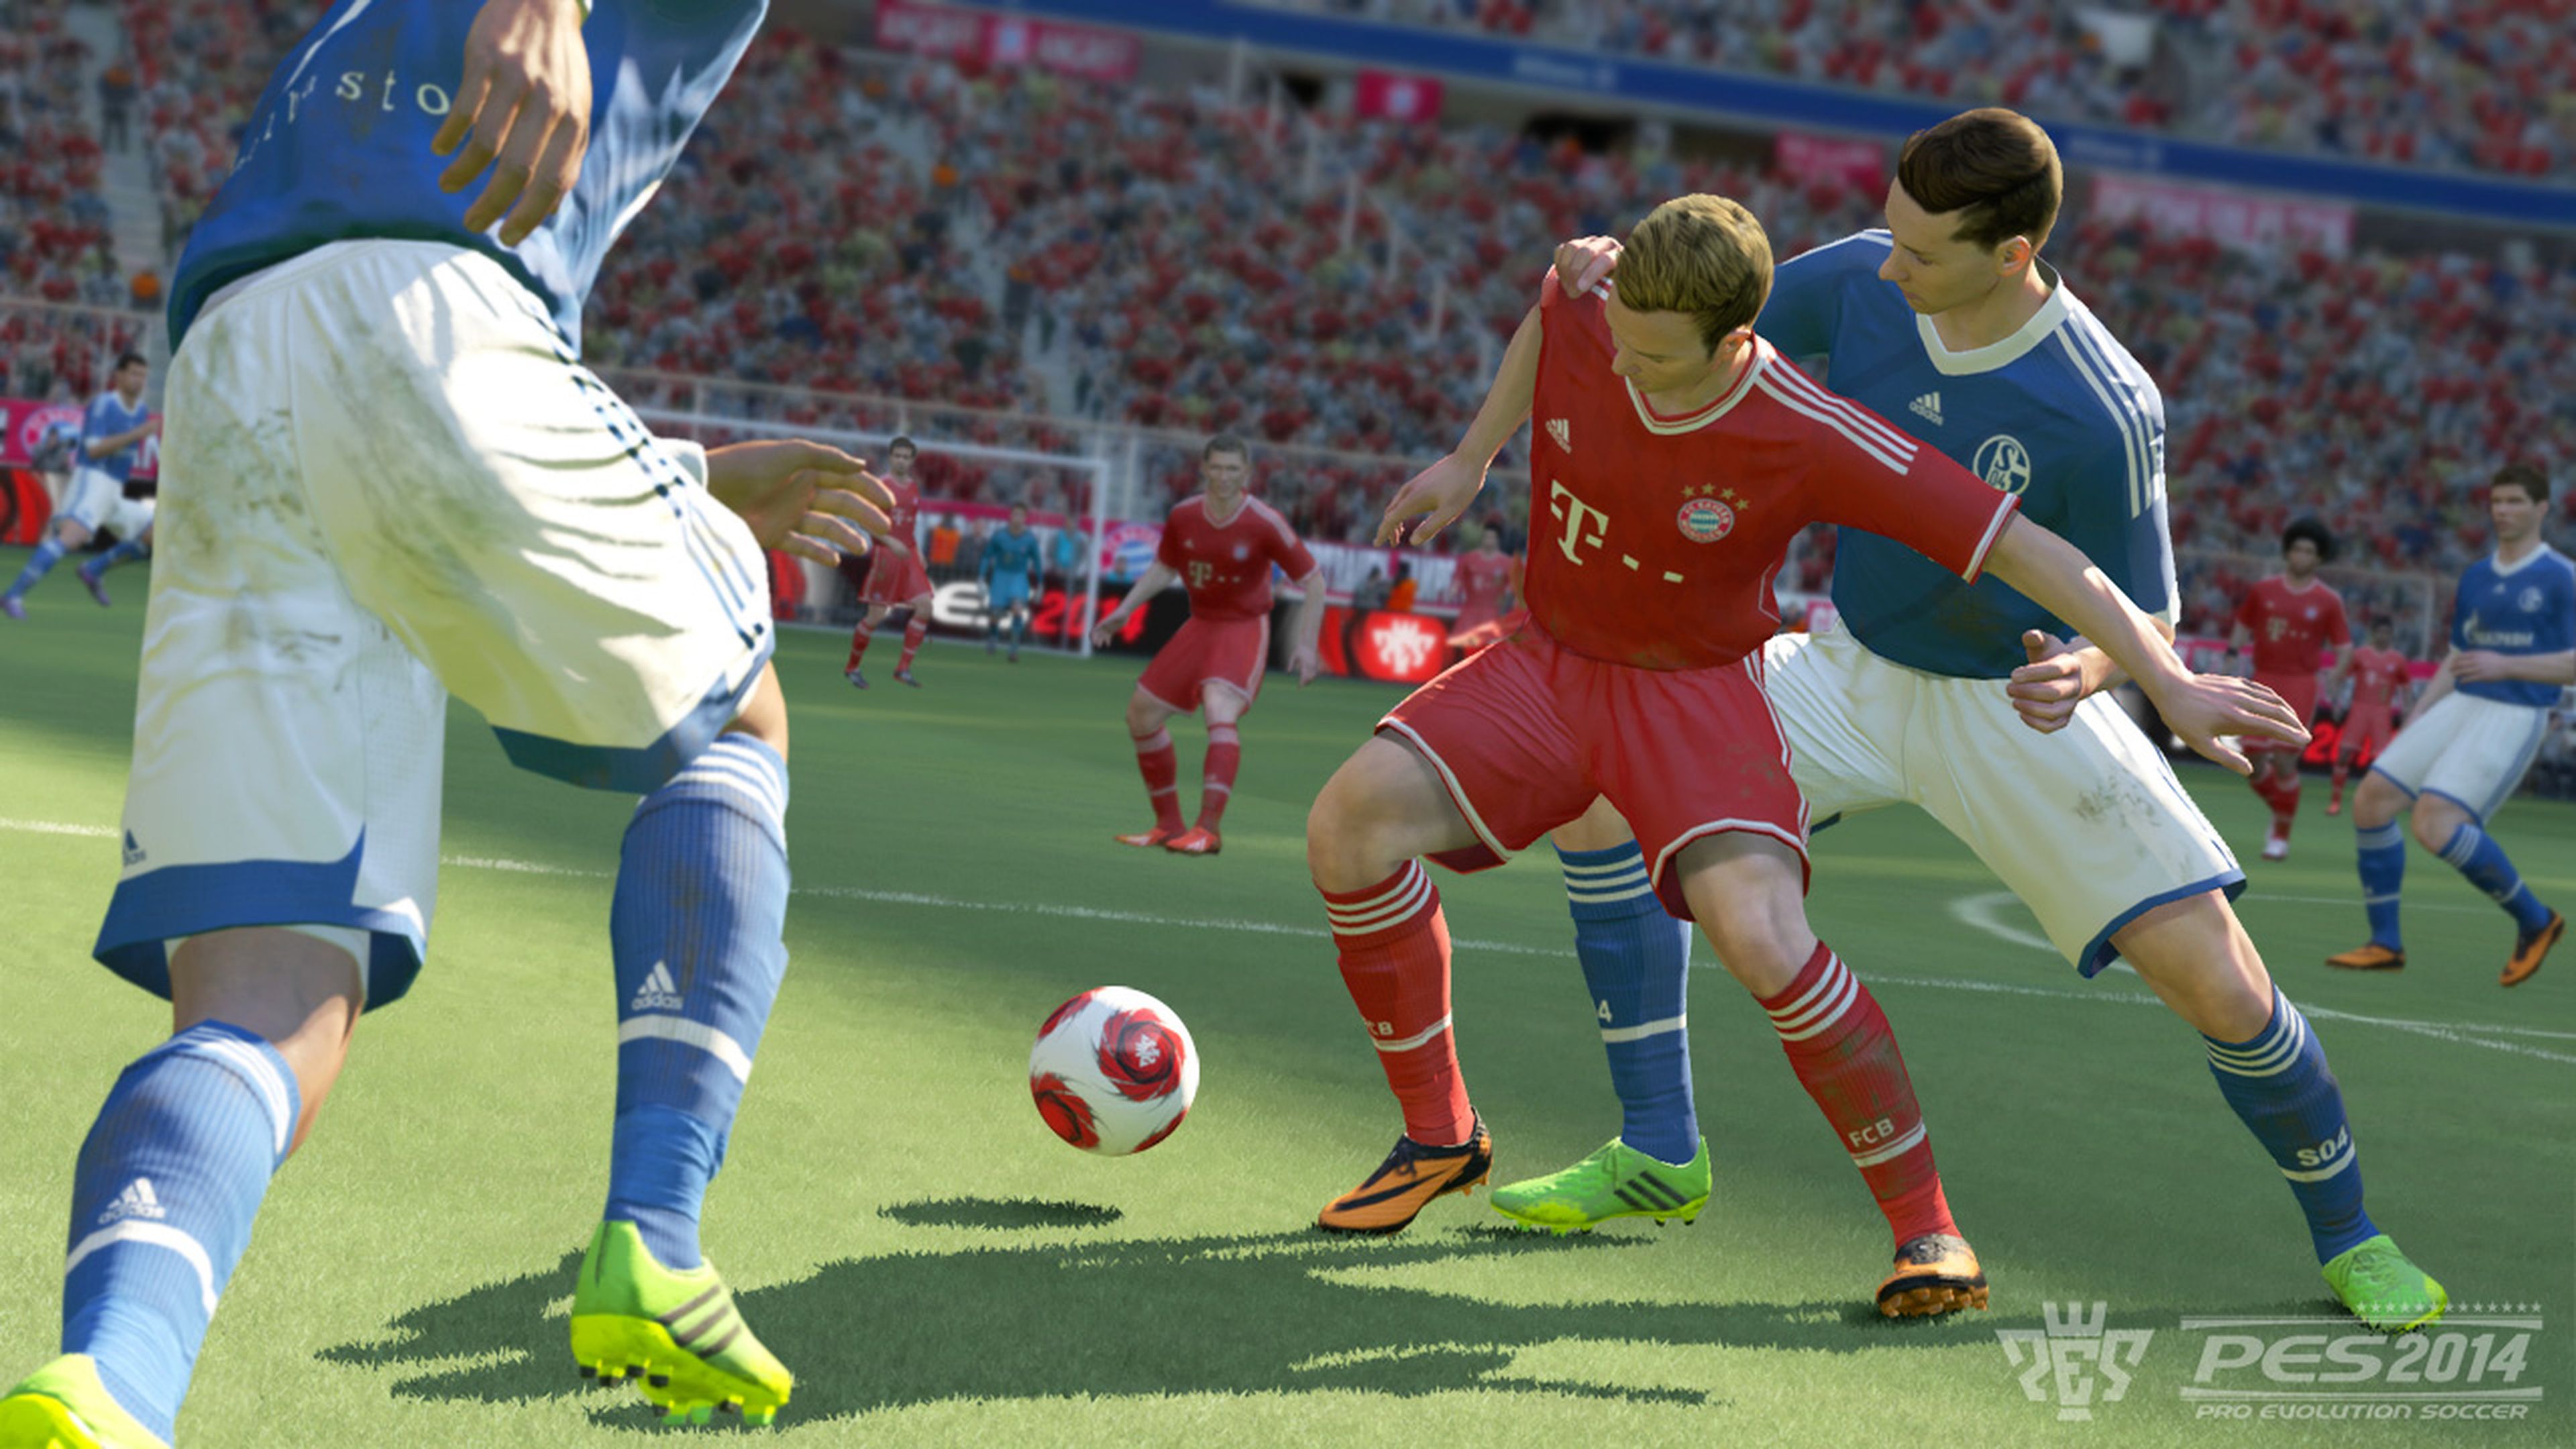 Comparativa de FIFA 14 y Pro Evolution Soccer 2014